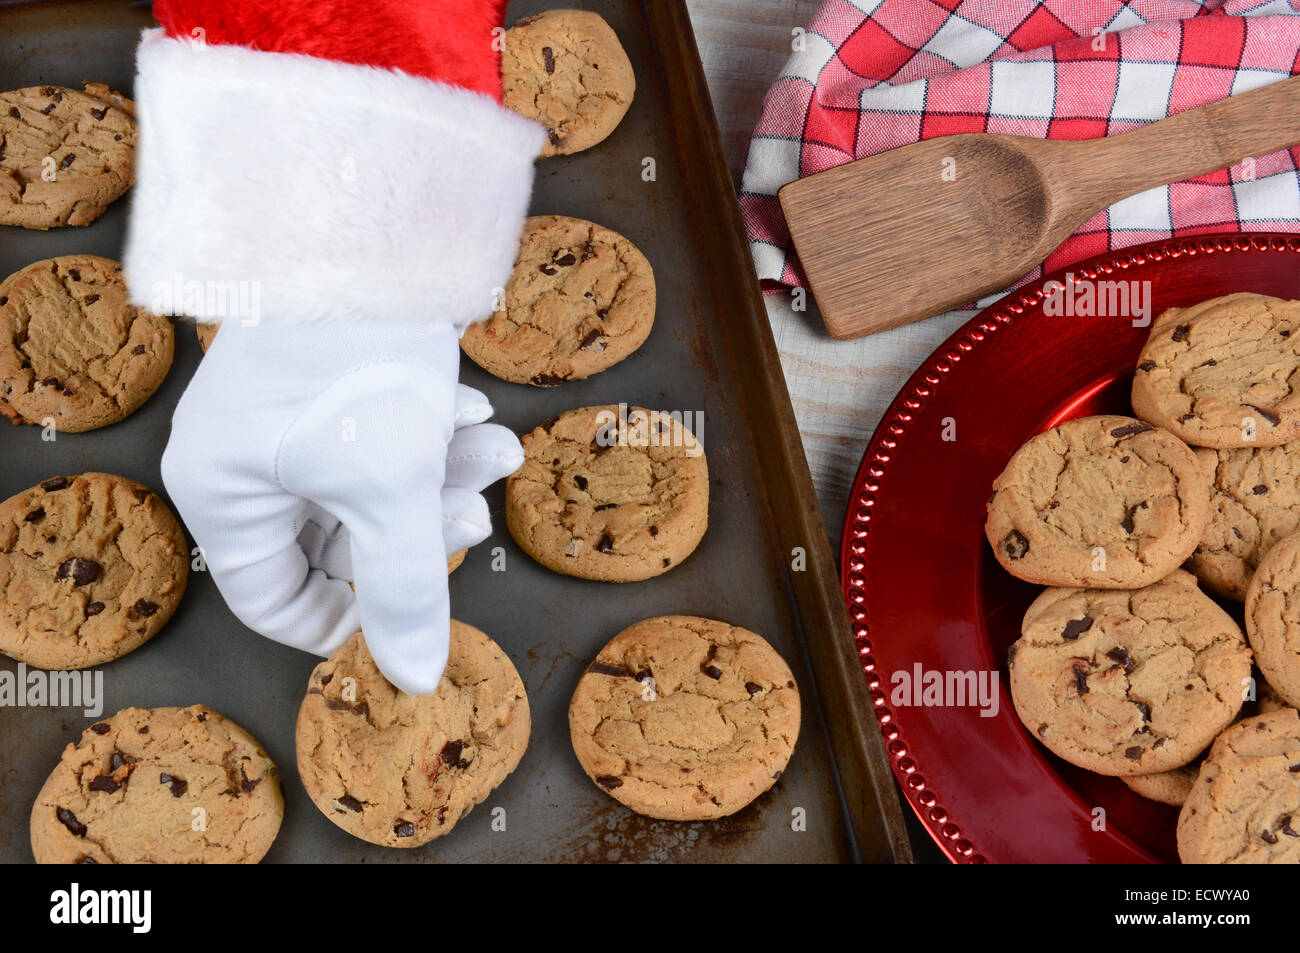 Primo piano di Santa Claus prendendo un fresco Biscotto cotto al forno da una placca da forno. Una piastra di biscotti al cioccolato è a lato. Foto Stock